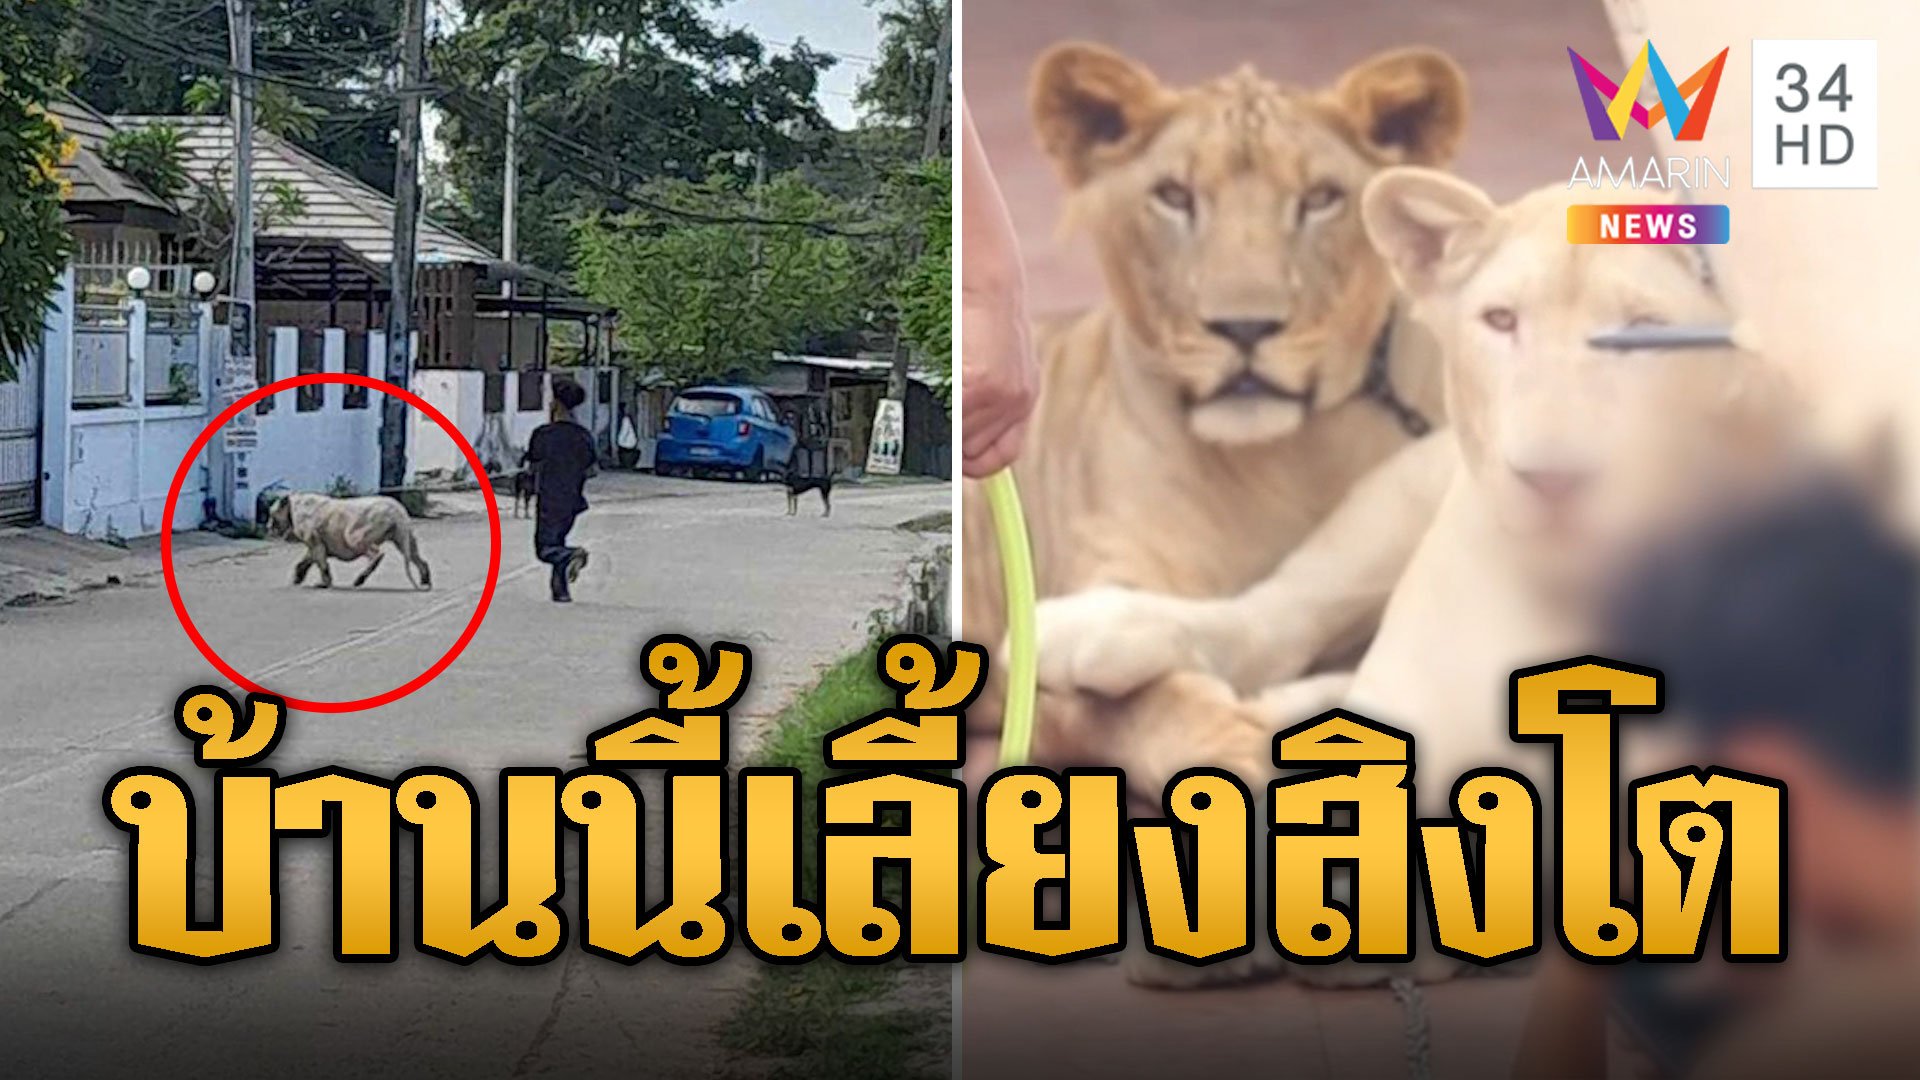 ชาวบ้านผวา! สิงโต หลุดกลางเมืองชลบุรี | ข่าวอรุณอมรินทร์ | 26 ม.ค. 67 | AMARIN TVHD34